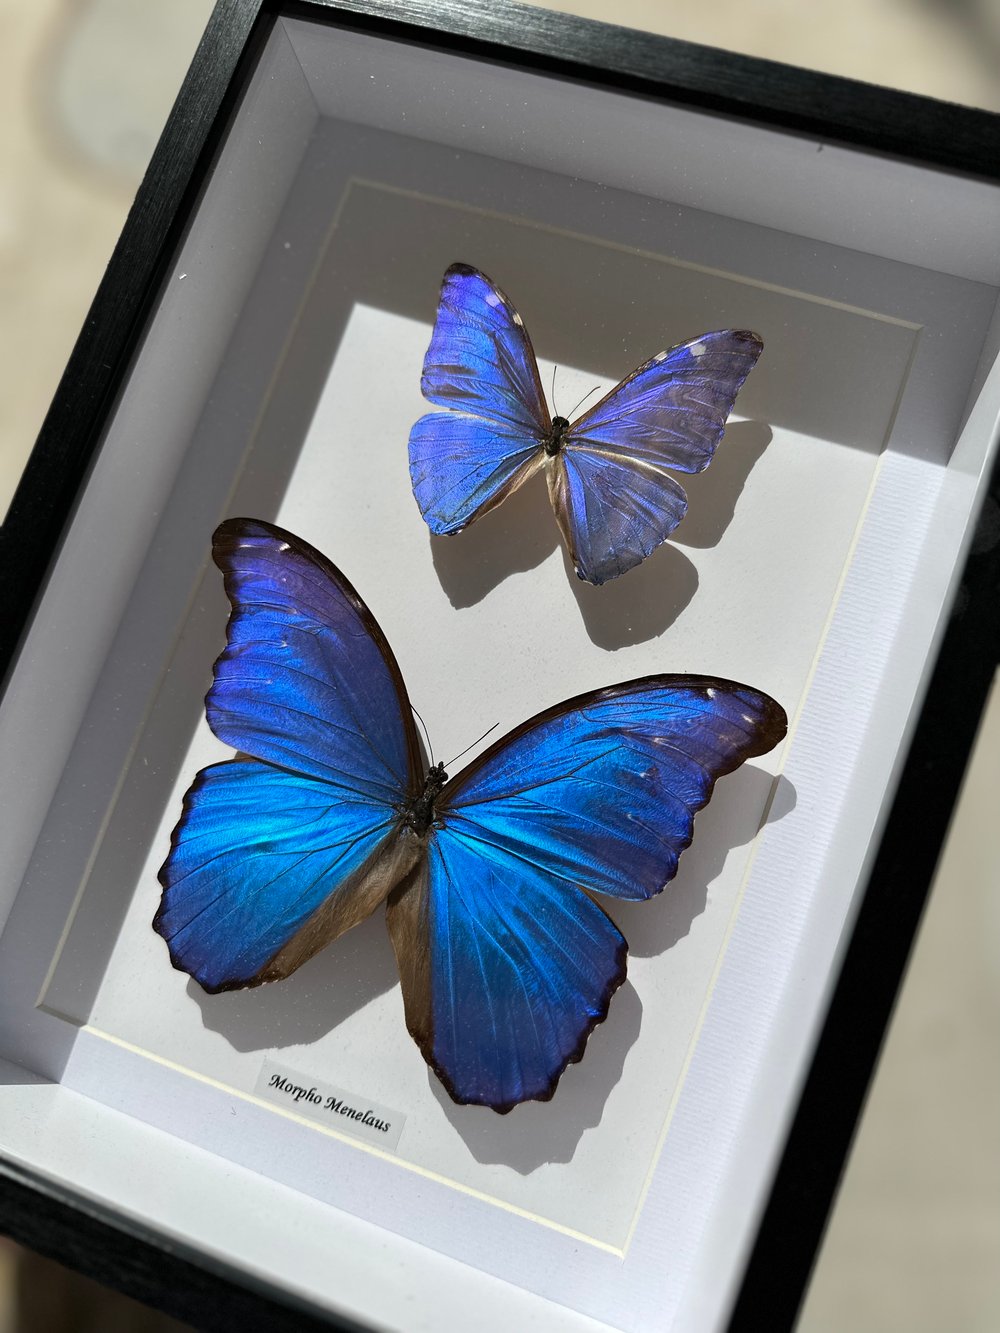 Image of Murpho Duo Butterfly Specimen